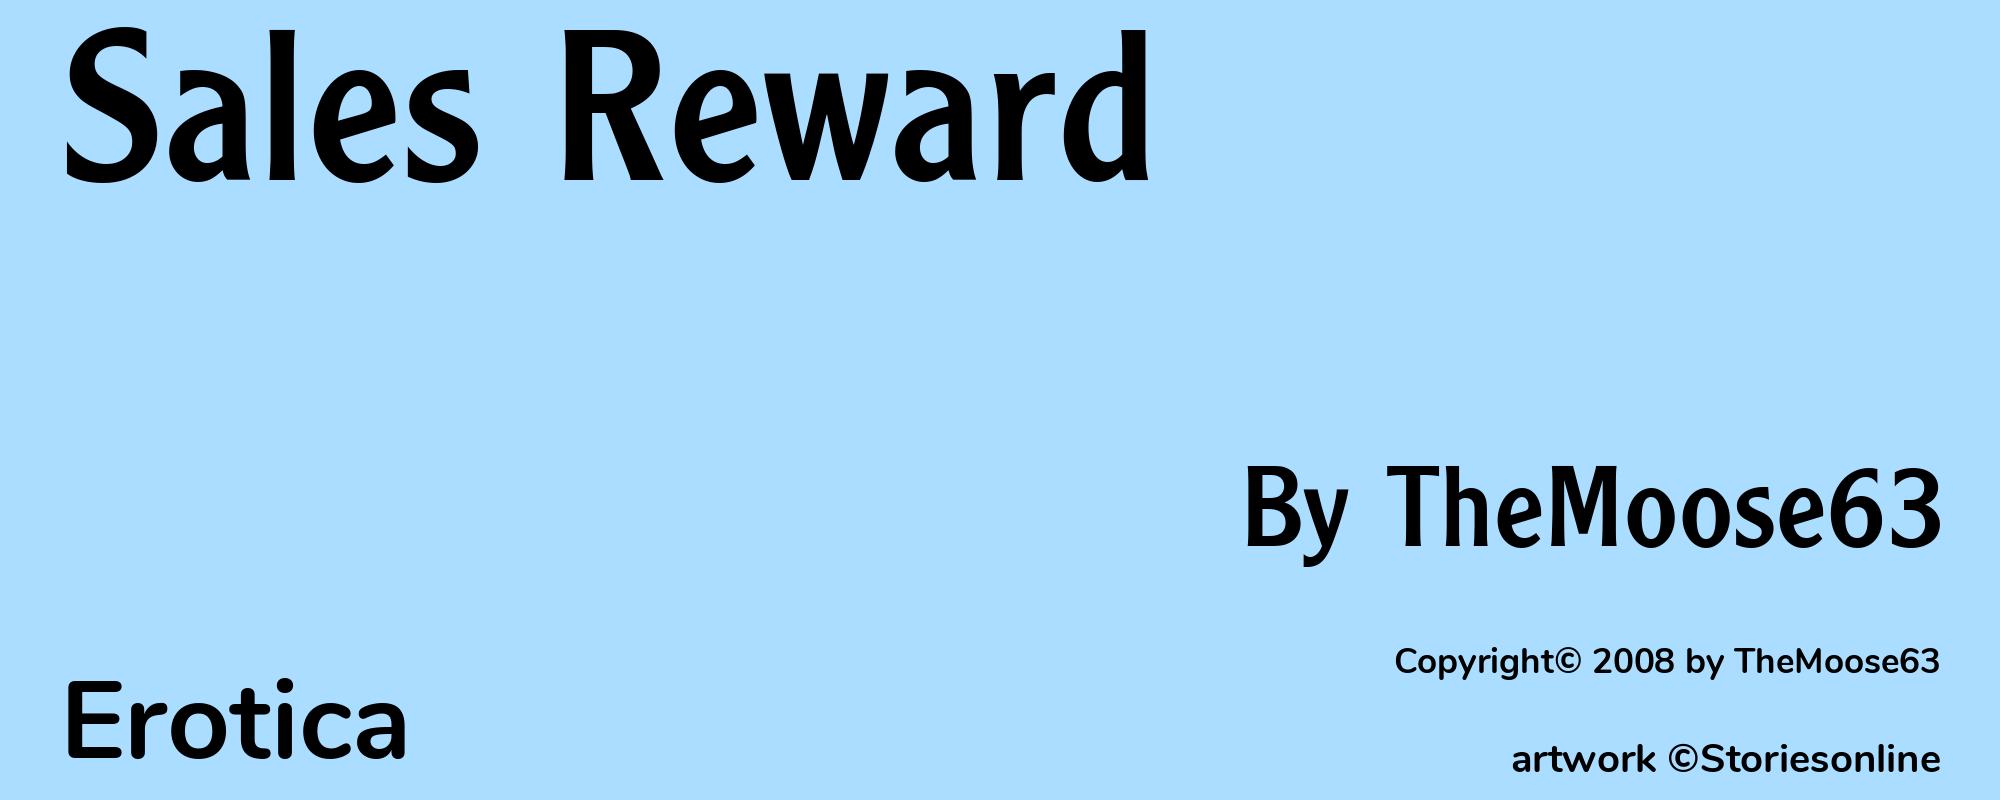 Sales Reward - Cover